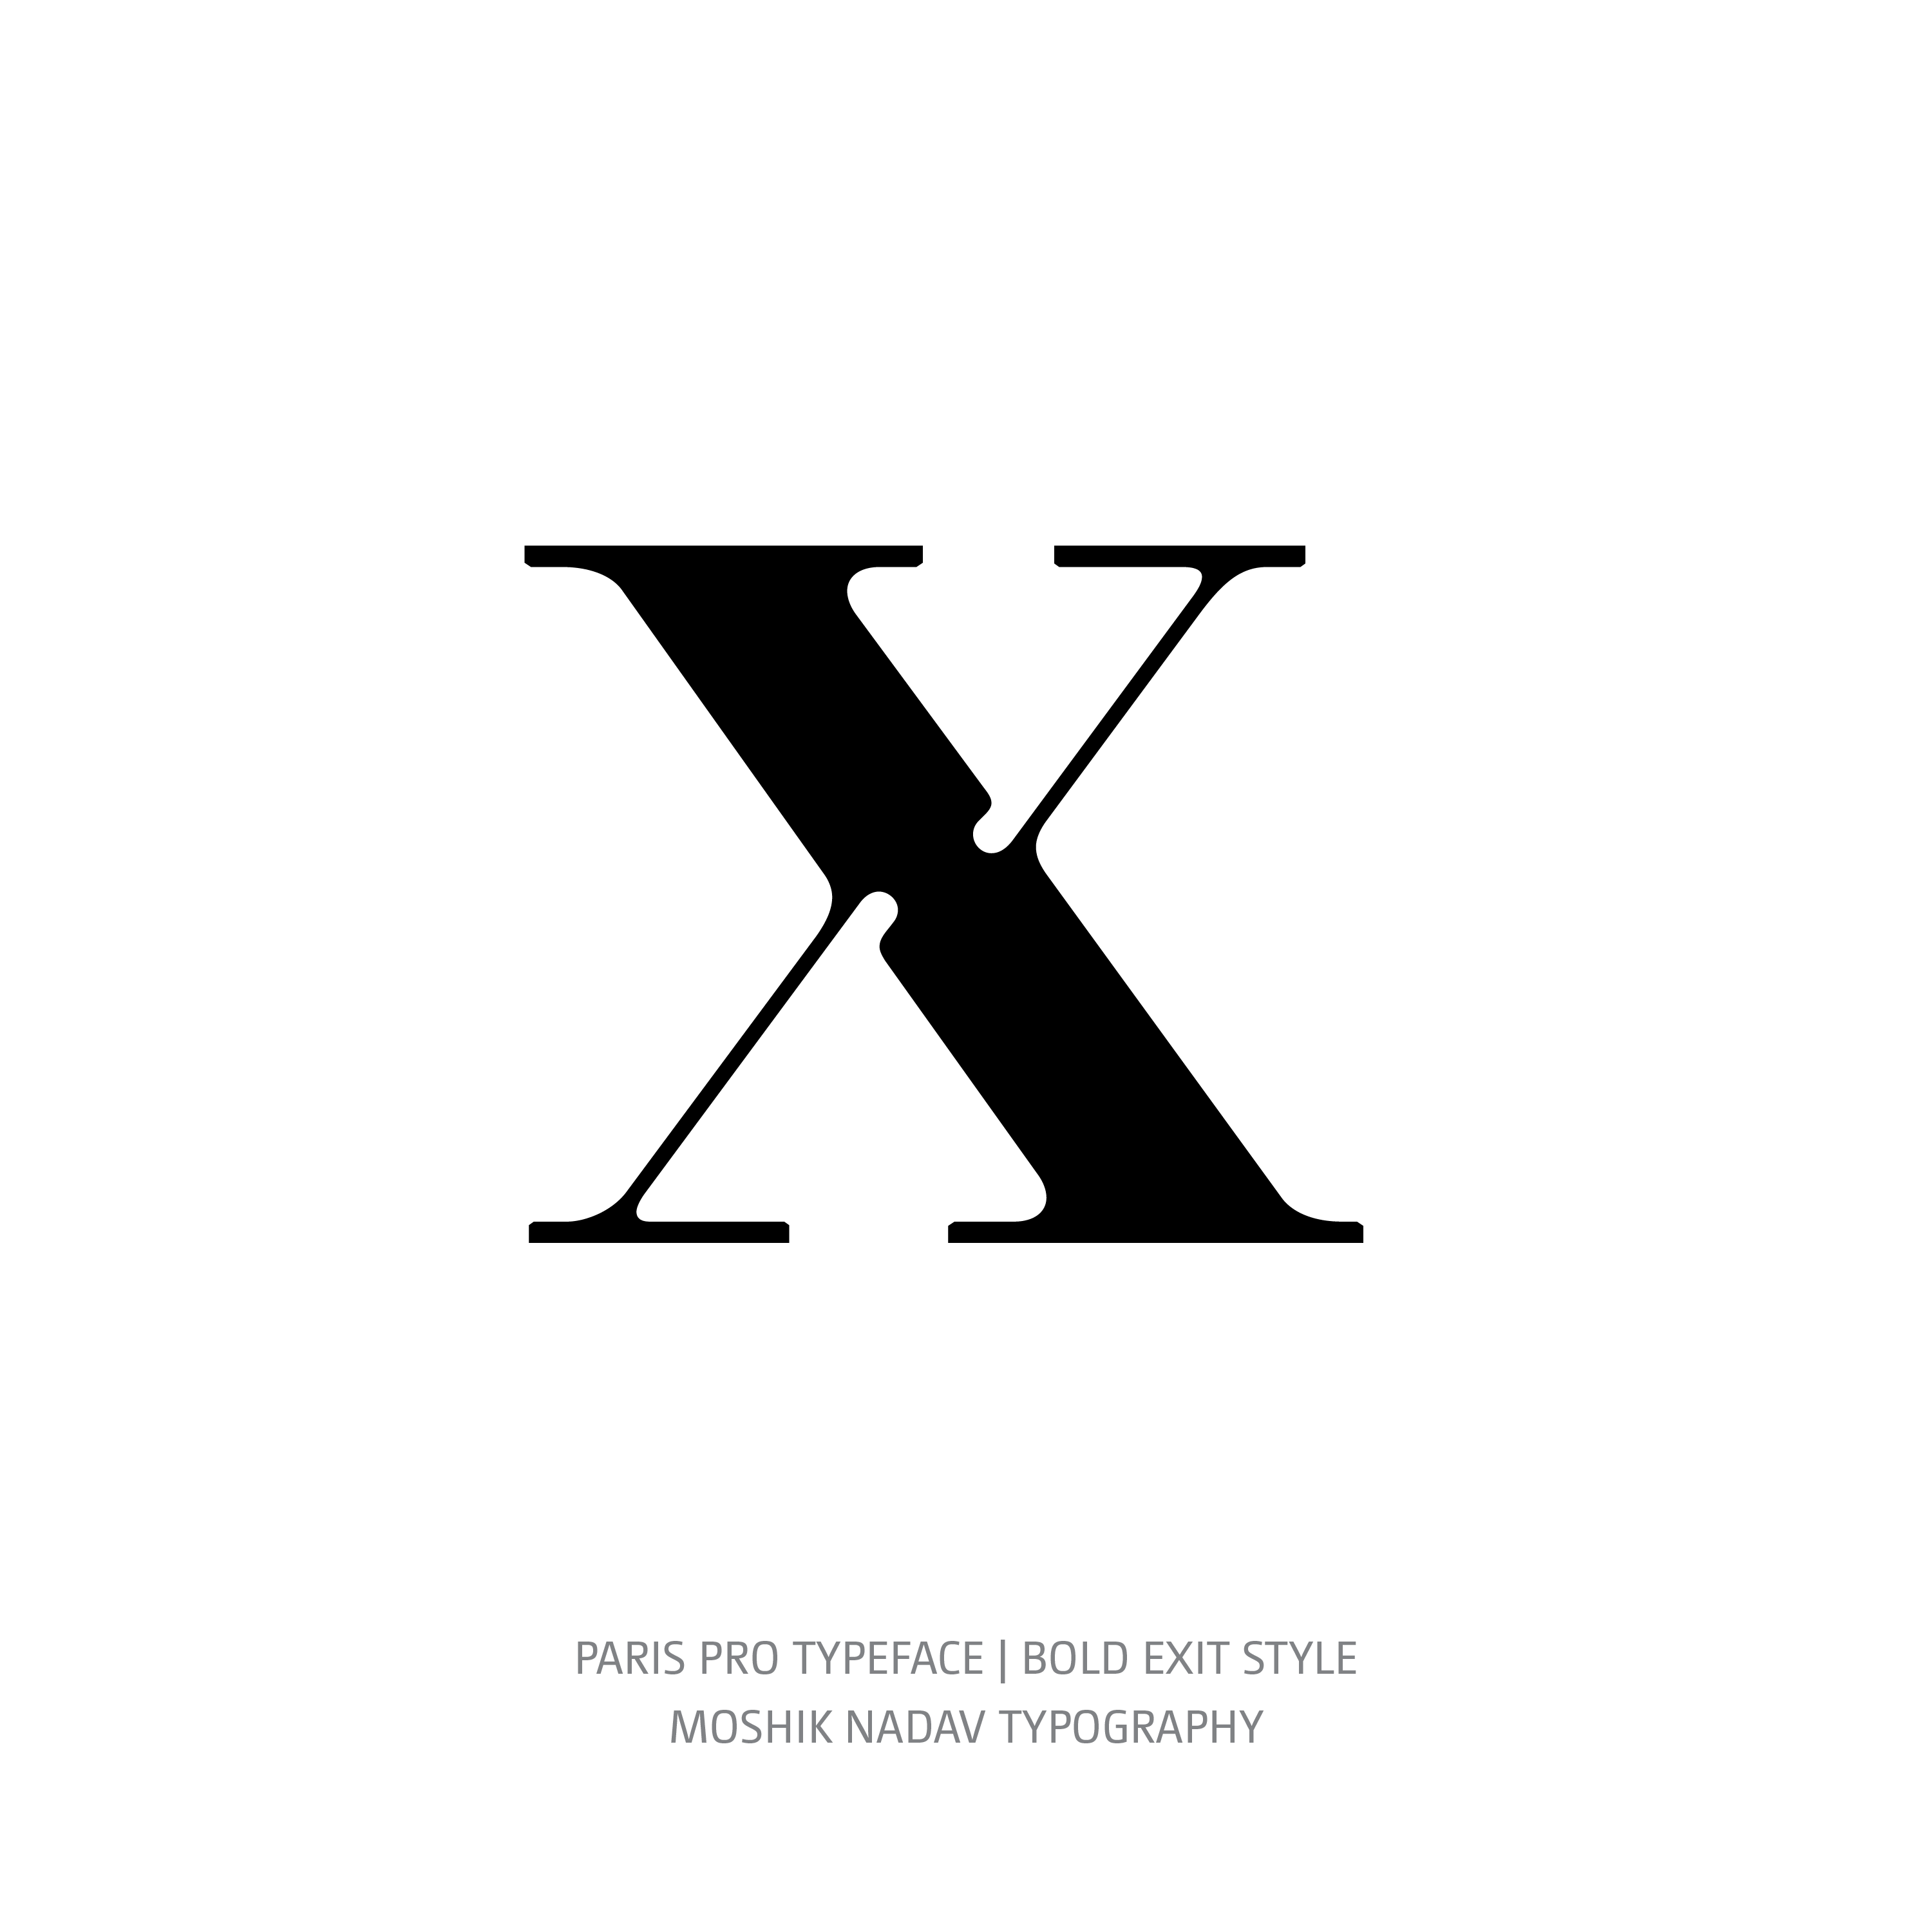 Paris Pro Typeface Bold Exit x